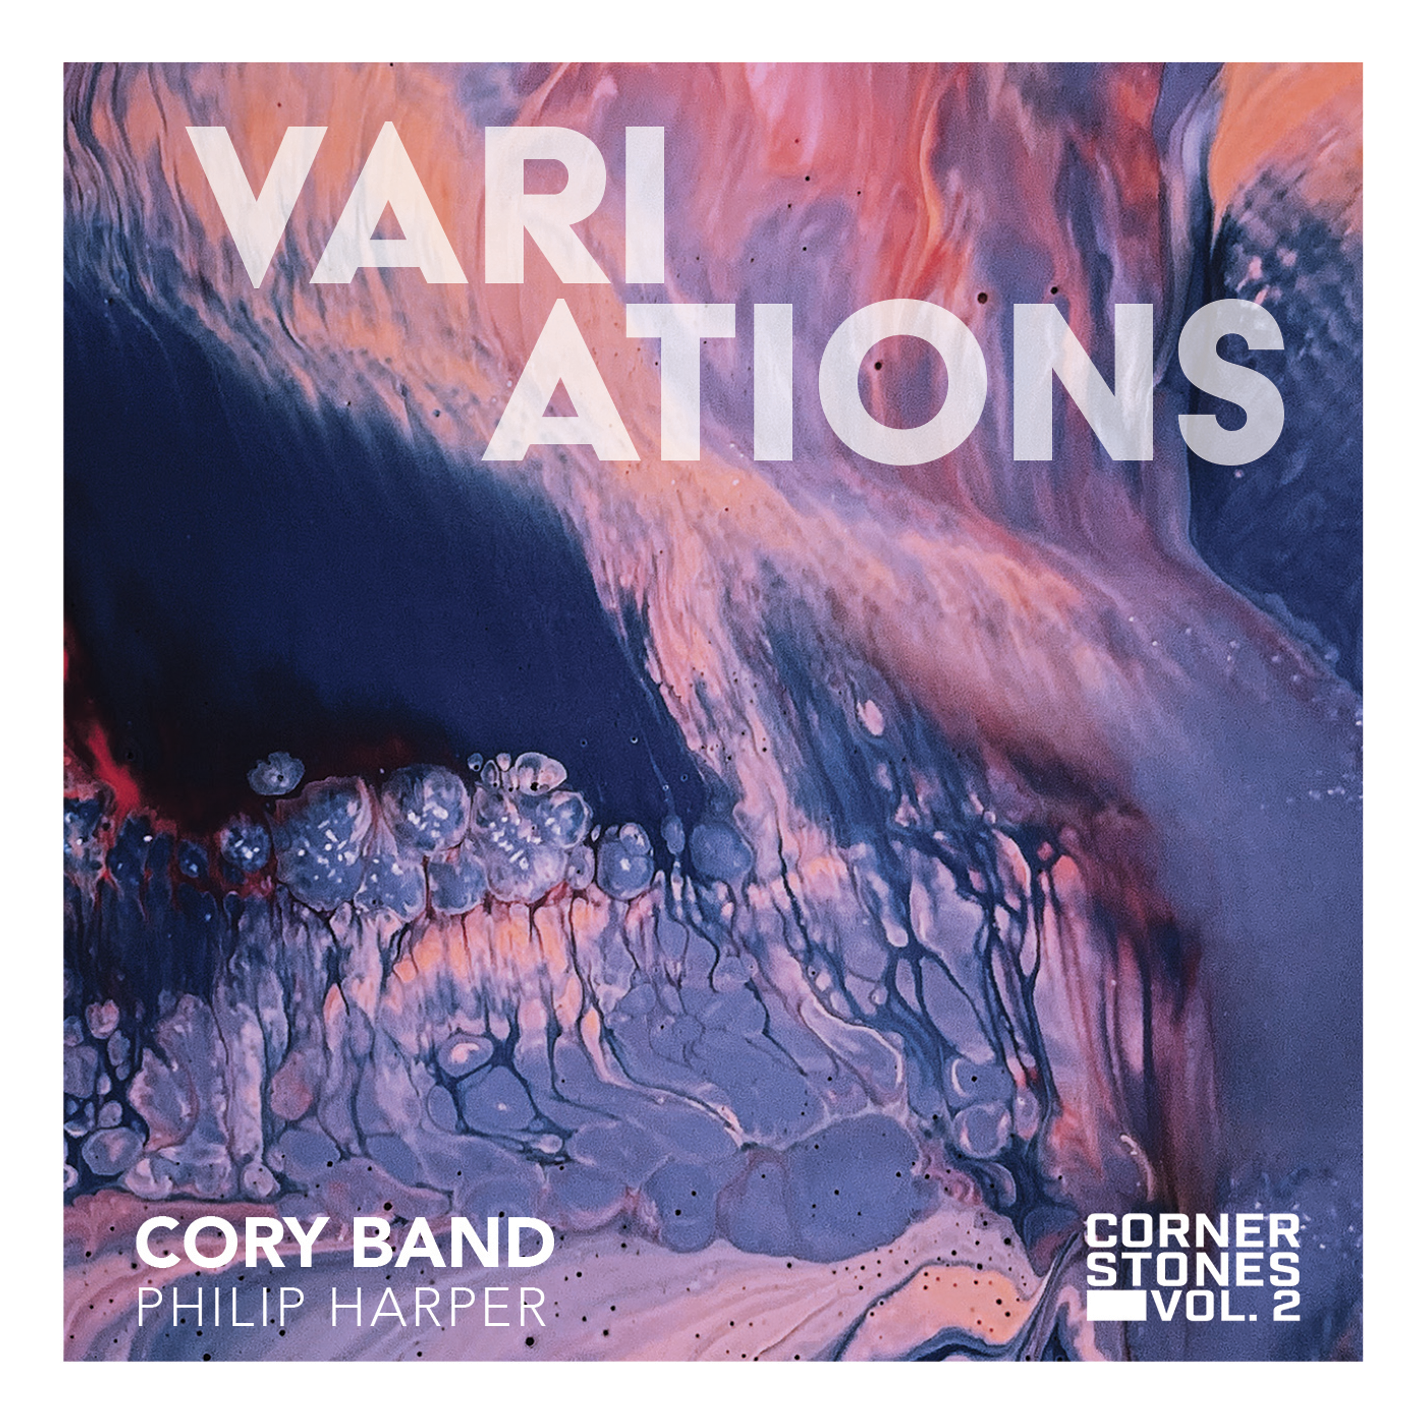 Cornerstones Vol. 2 - Variations - Download